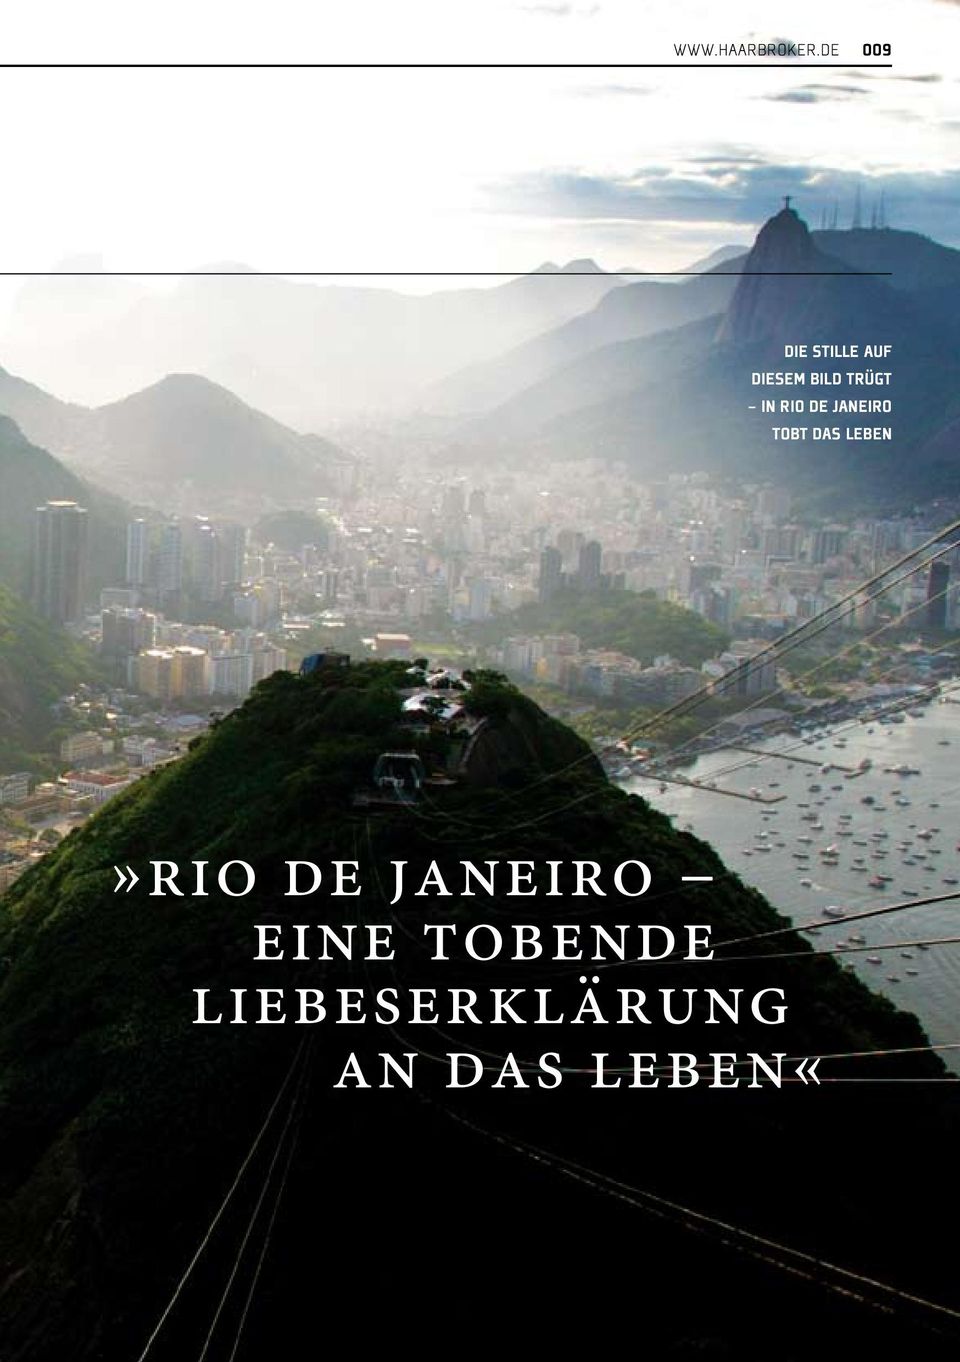 TRÜGT IN RIO DE JANEIRO TOBT DAS